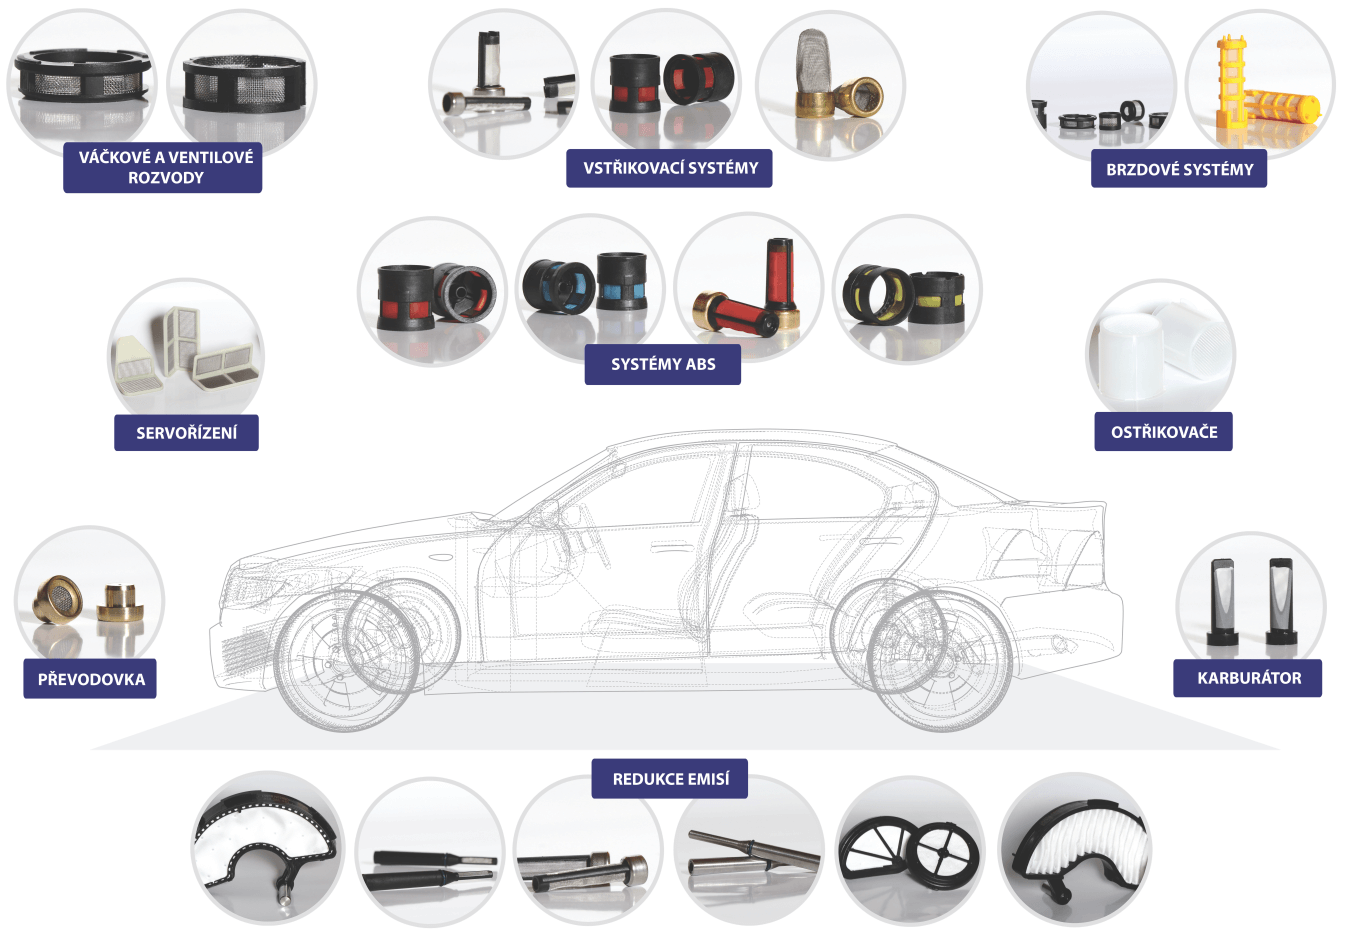 Filtry které vyrábíme a jejich příklady použití v autě